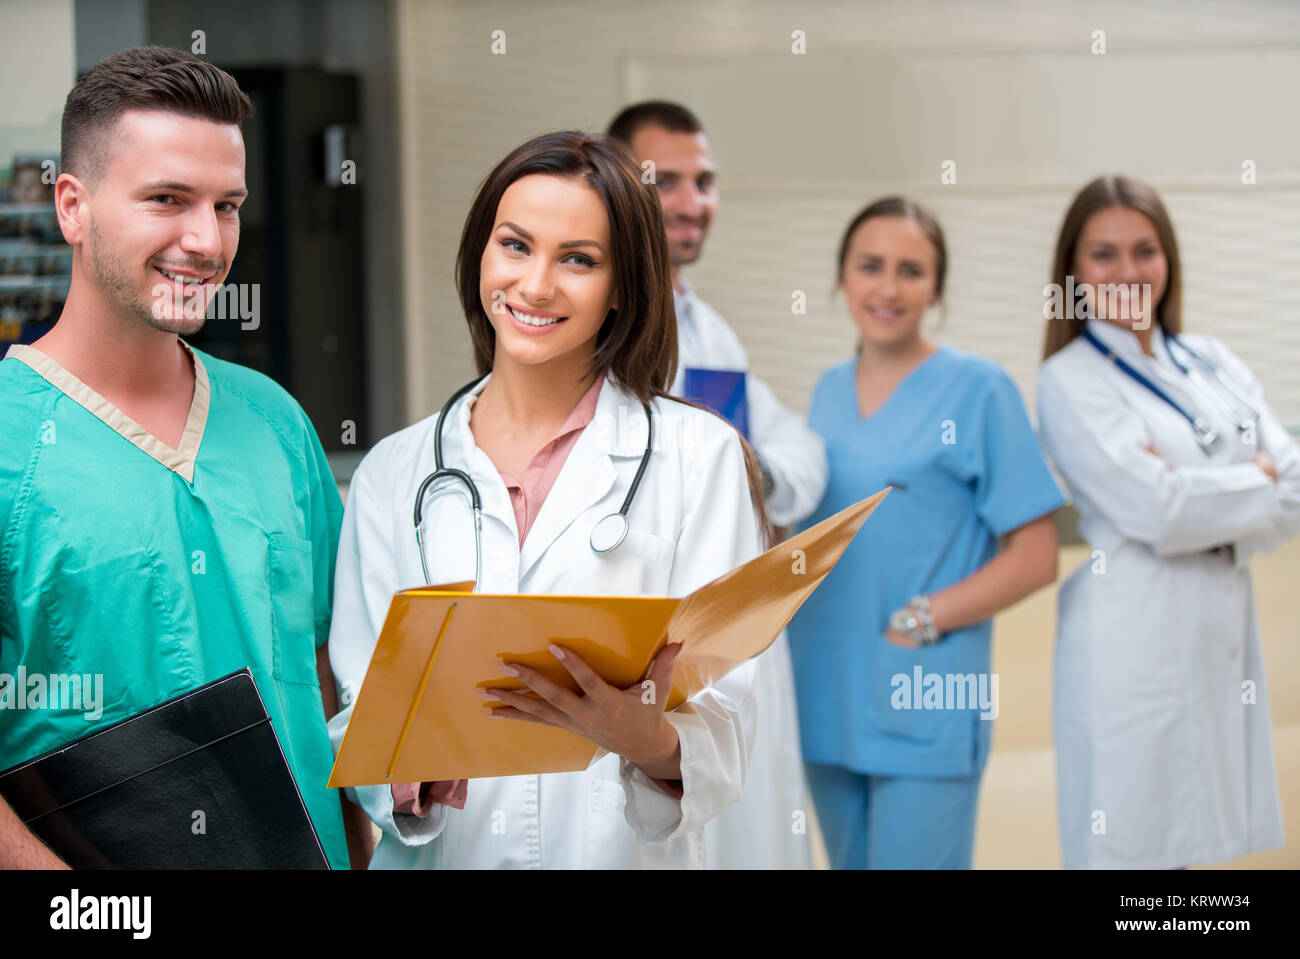 La clínica, la profesión, la gente, la salud y la medicina concepto - feliz grupo de médicos o médicos en el hospital el corredor Foto de stock